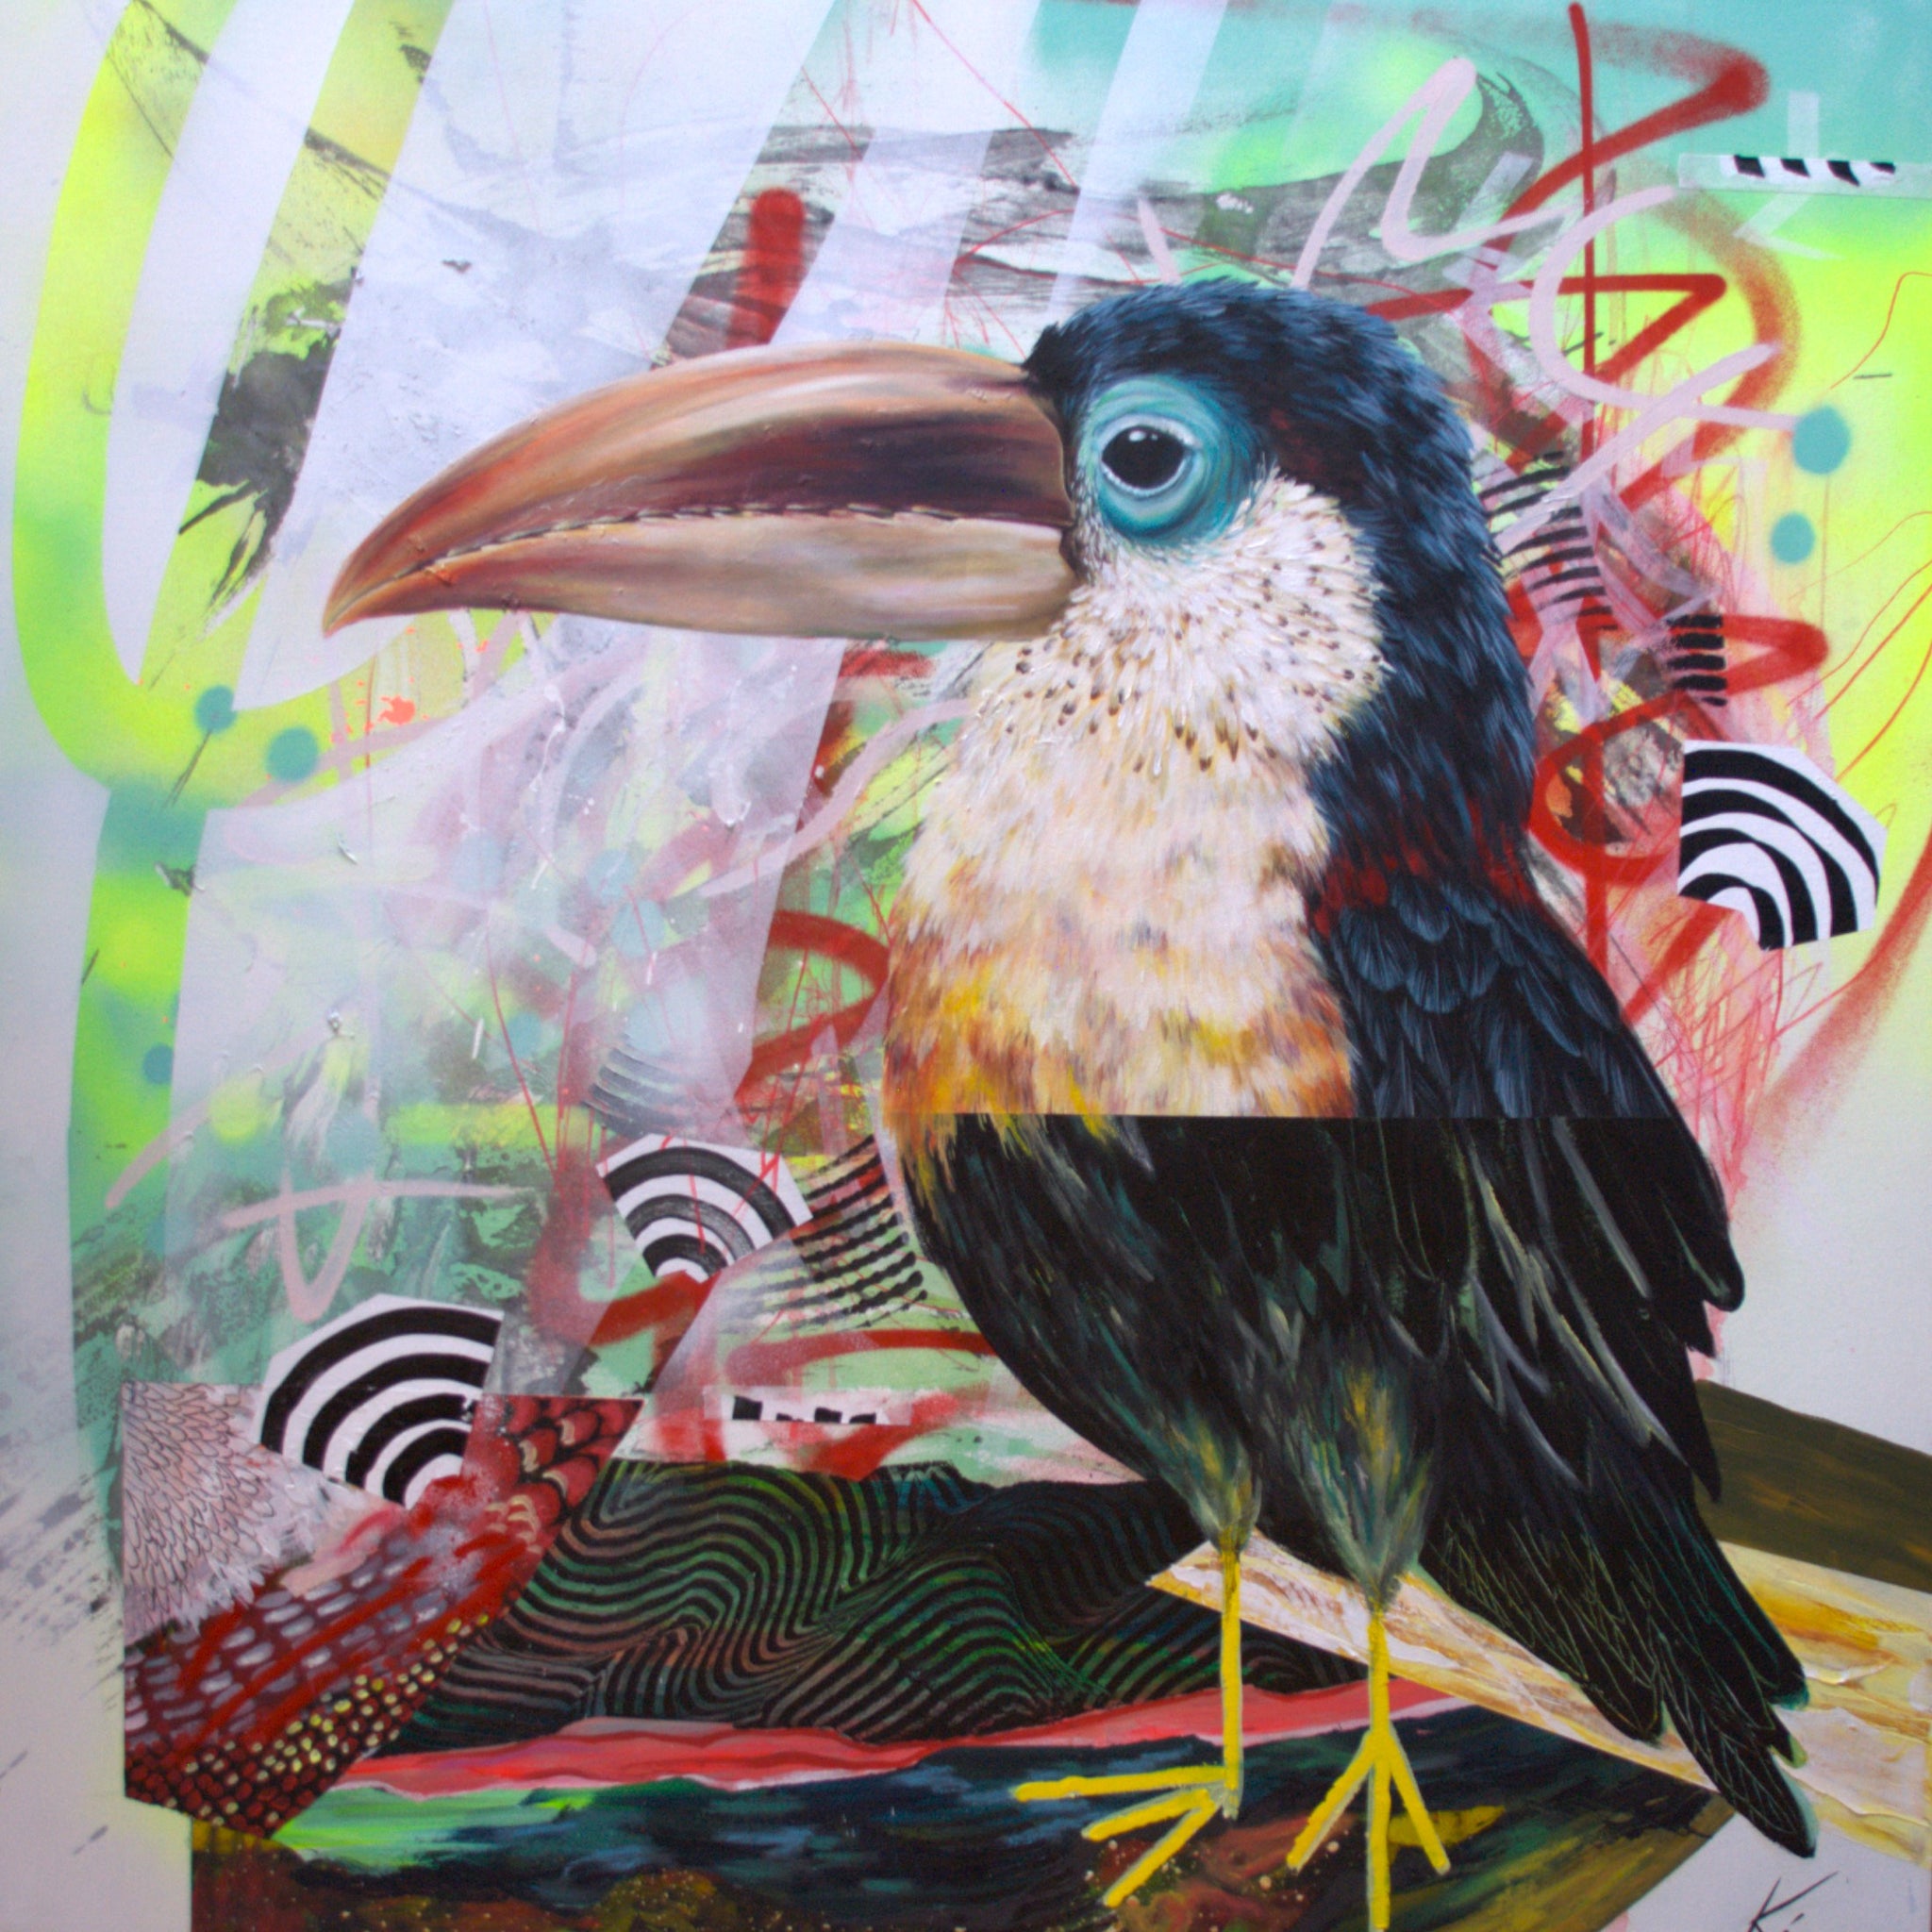 Peinture acrylique illustrant un toucan, avec une partie supérieure réaliste et une partie inférieure traitée de manière naïve. L'oiseau est posé sur un fond inspiré du street art, agrémenté de traits de peinture aérosol rouge.